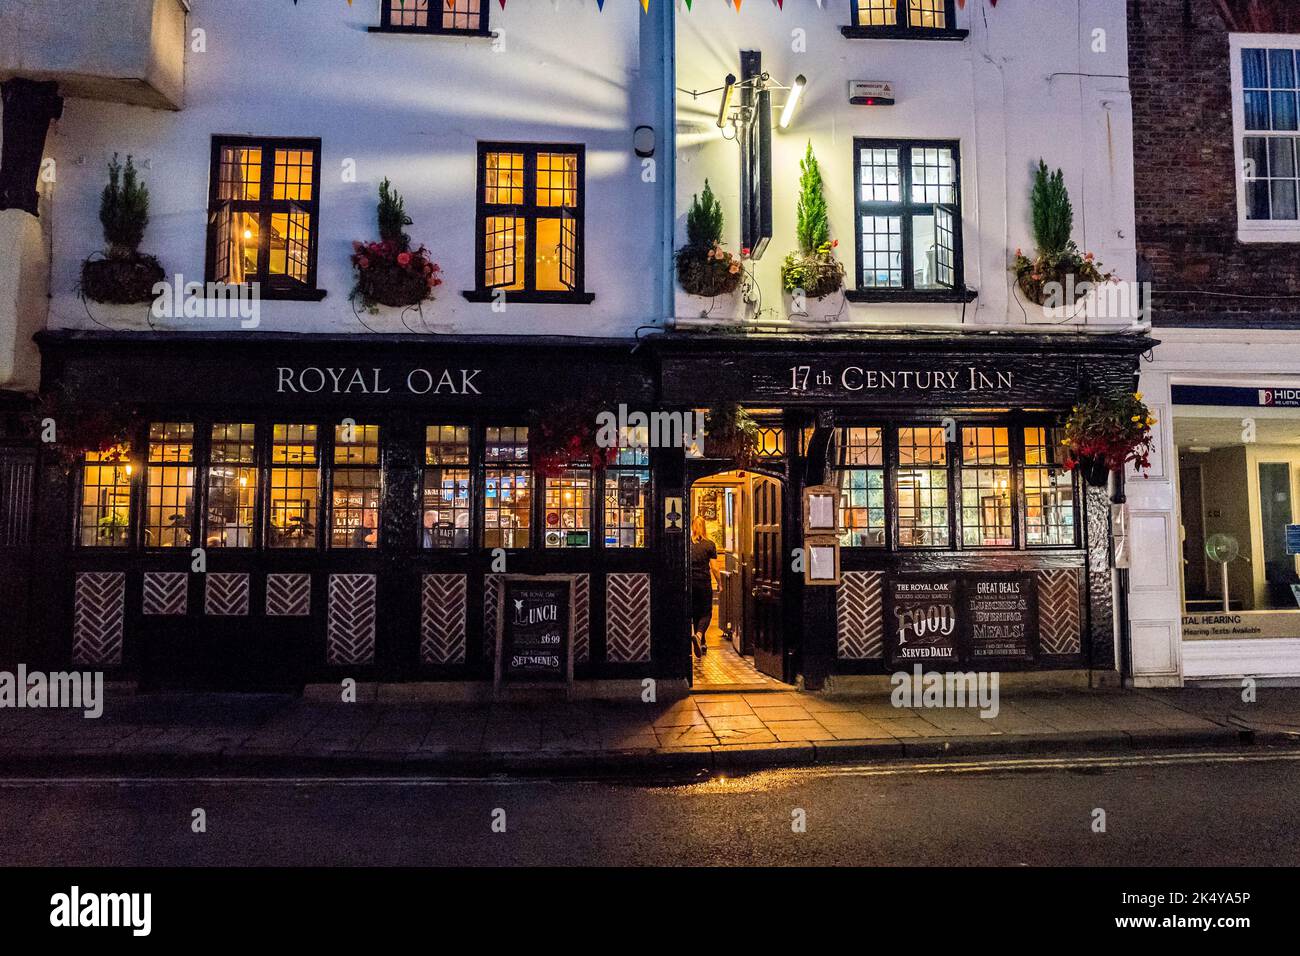 The Royal Oak, ein holzgerahmtes 17. Century Inn, öffentliches Haus oder Pub mit zahlenden Kunden am späten Abend, York, Yorkshire. Stockfoto